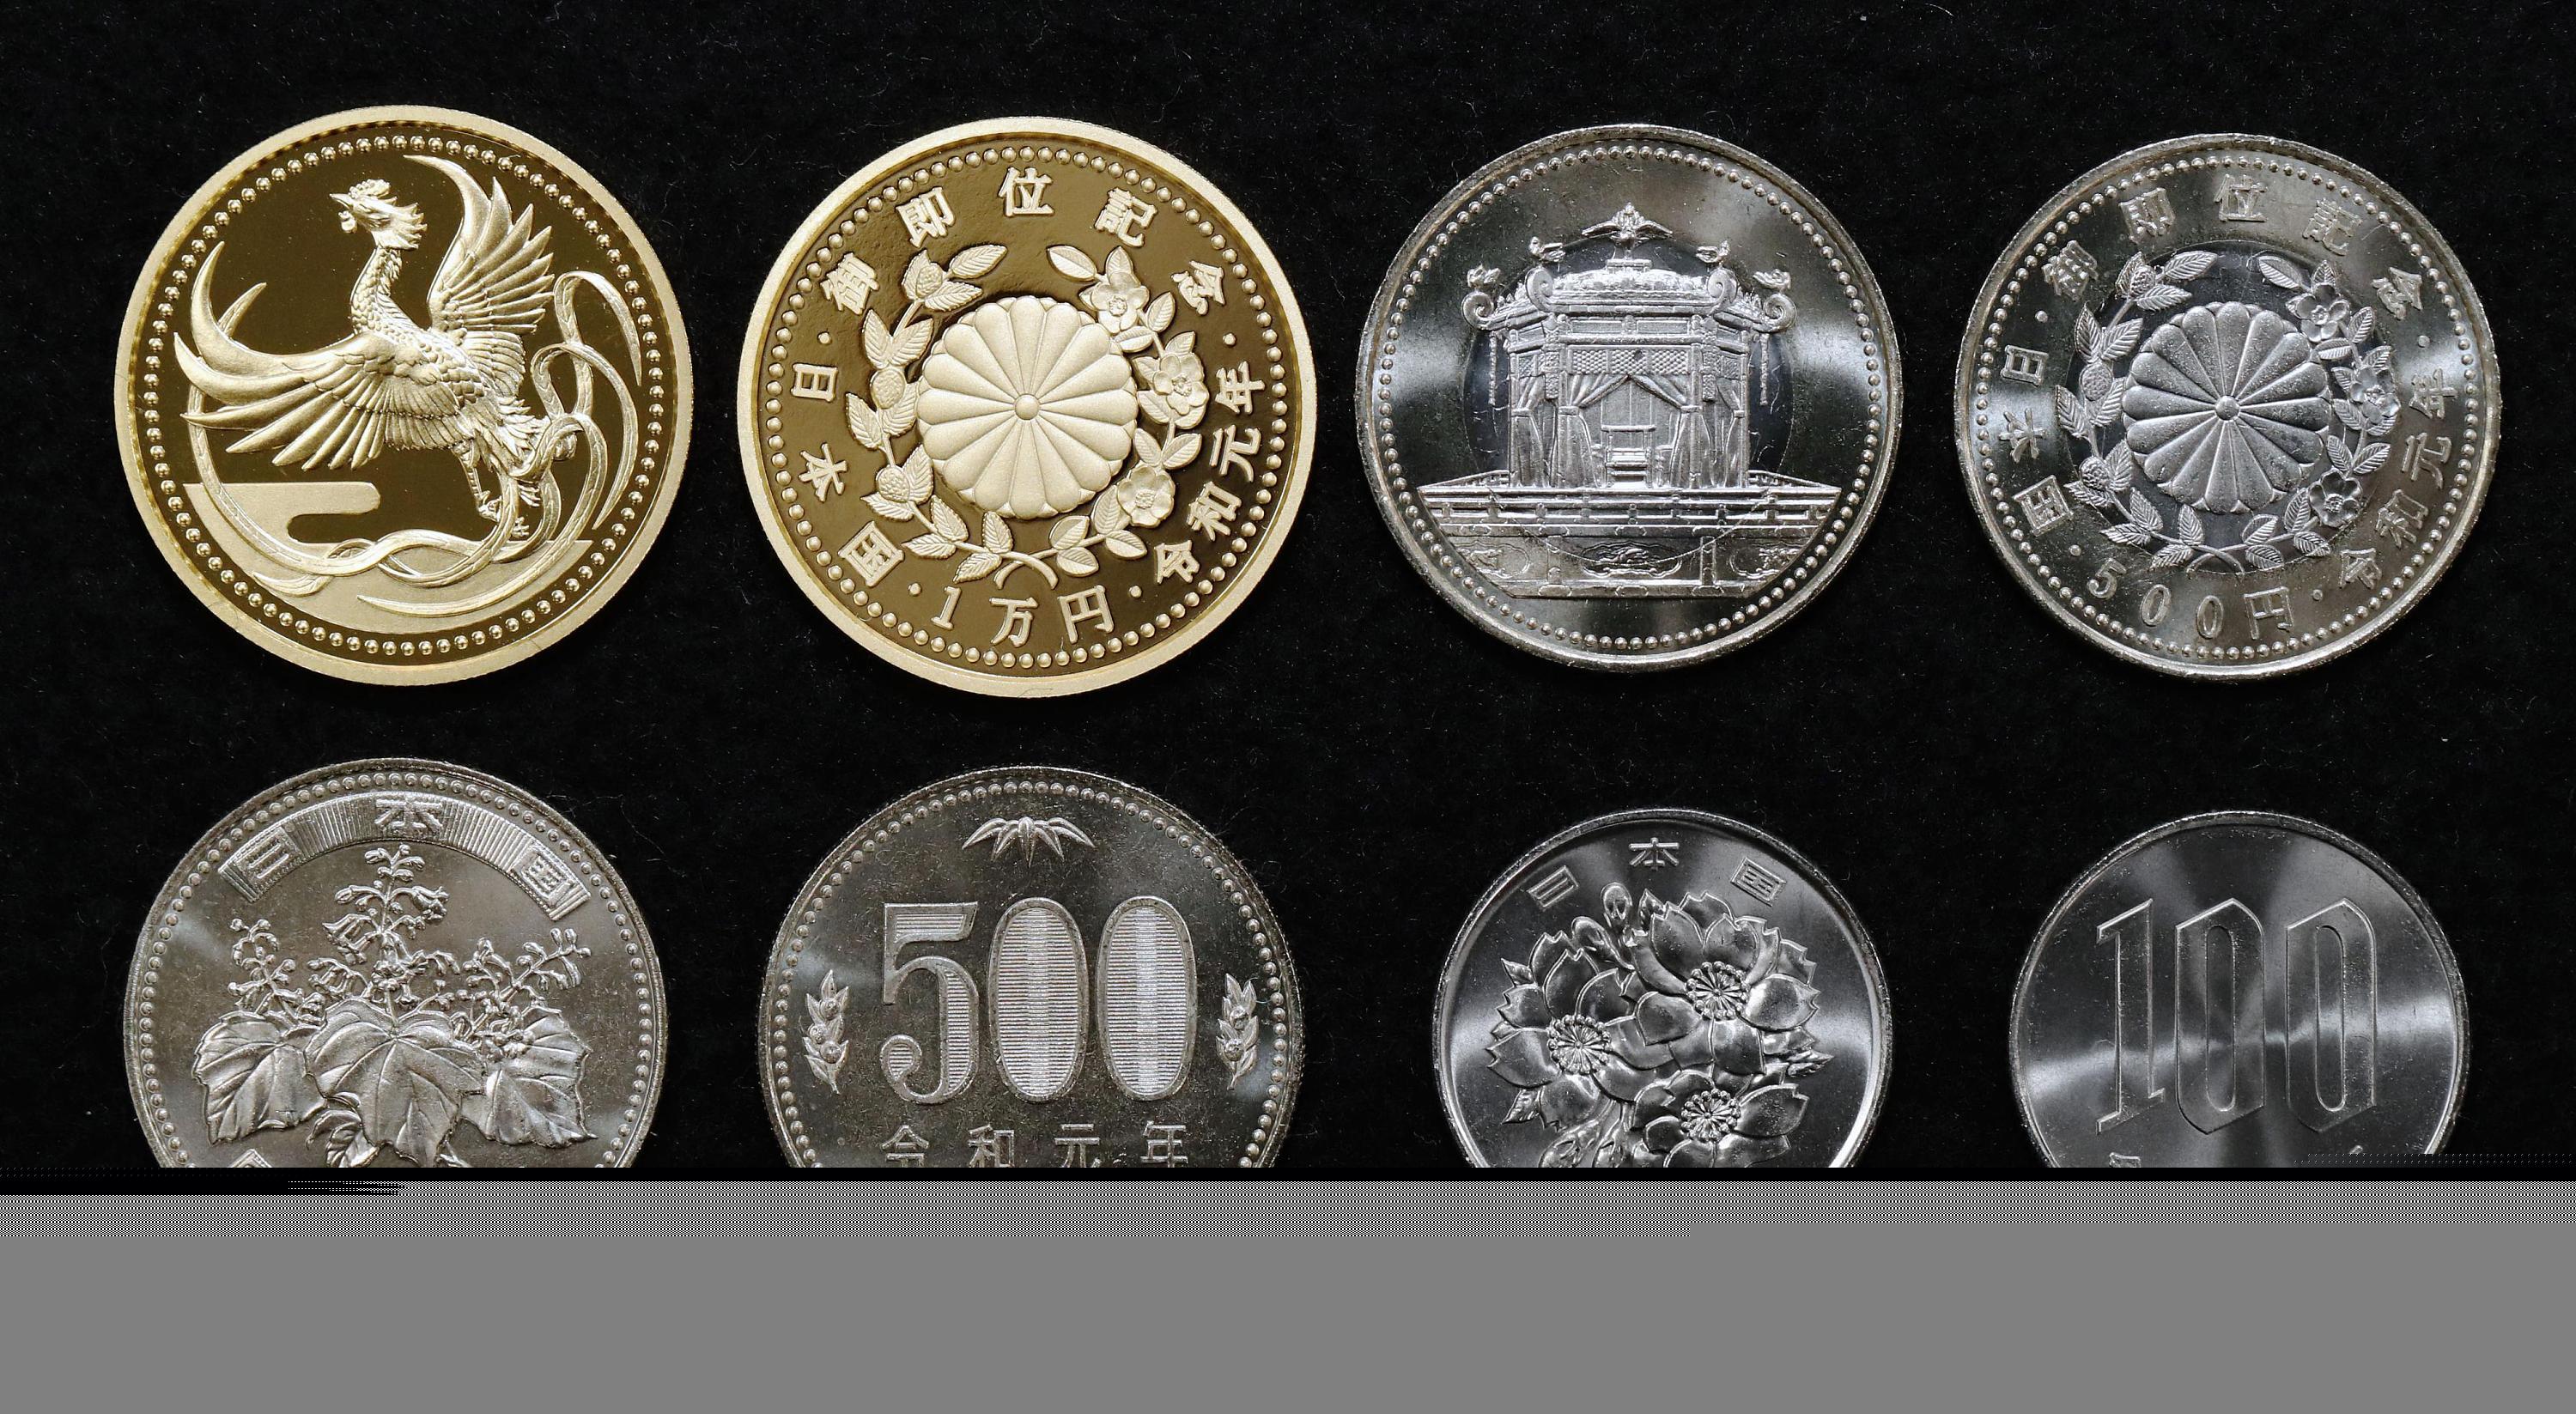 日本铸造“令和元年”硬币 并推出新天皇即位纪念币